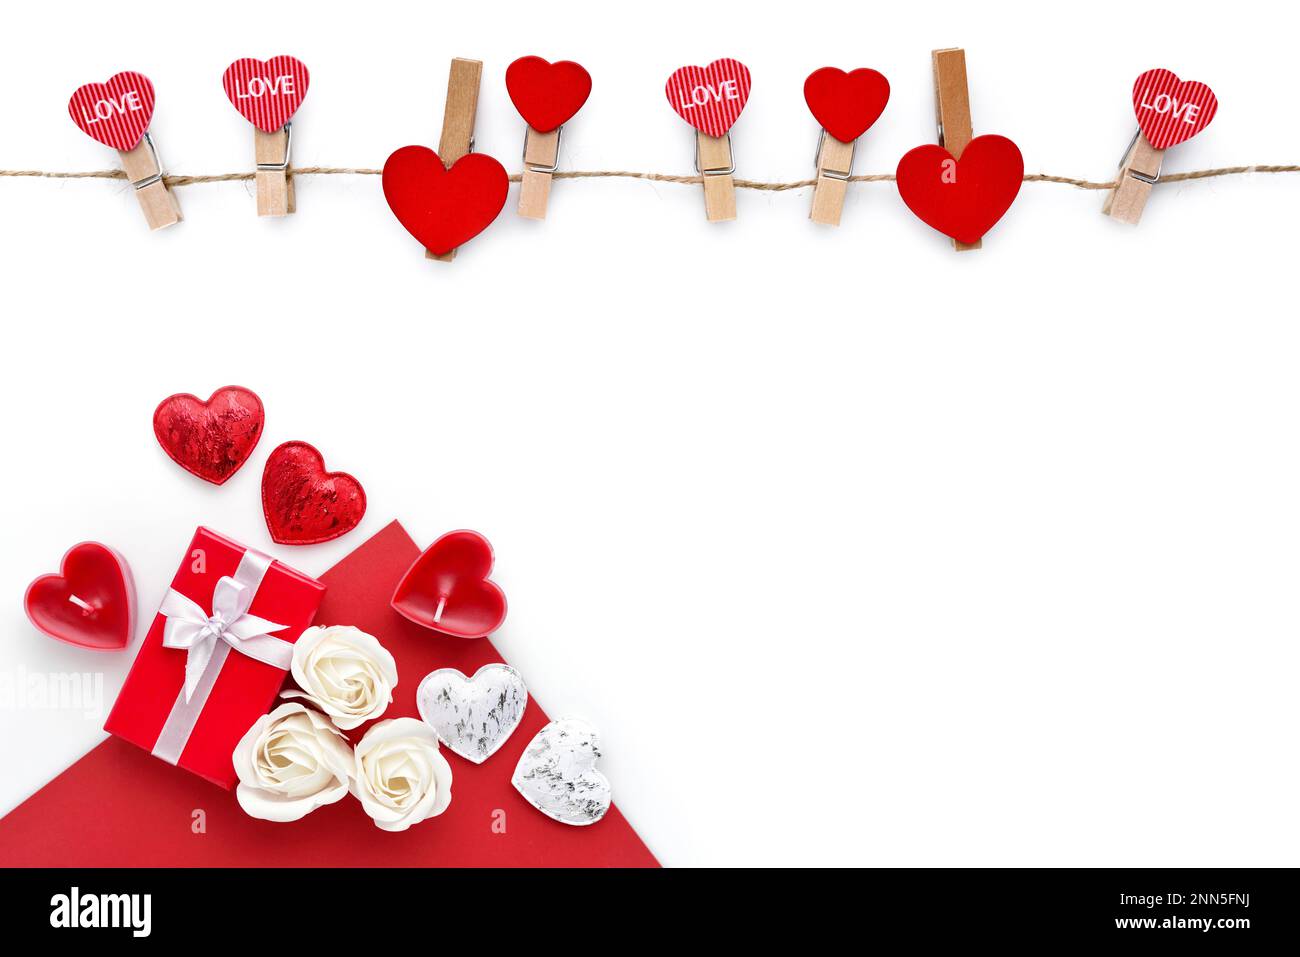 Kleiderschränke mit roten Herzen am Seil und rote Geschenkbox mit isolierten Rosen auf weißem Hintergrund. Draufsicht. Grußkarte. Platz für Ihren Text Stockfoto